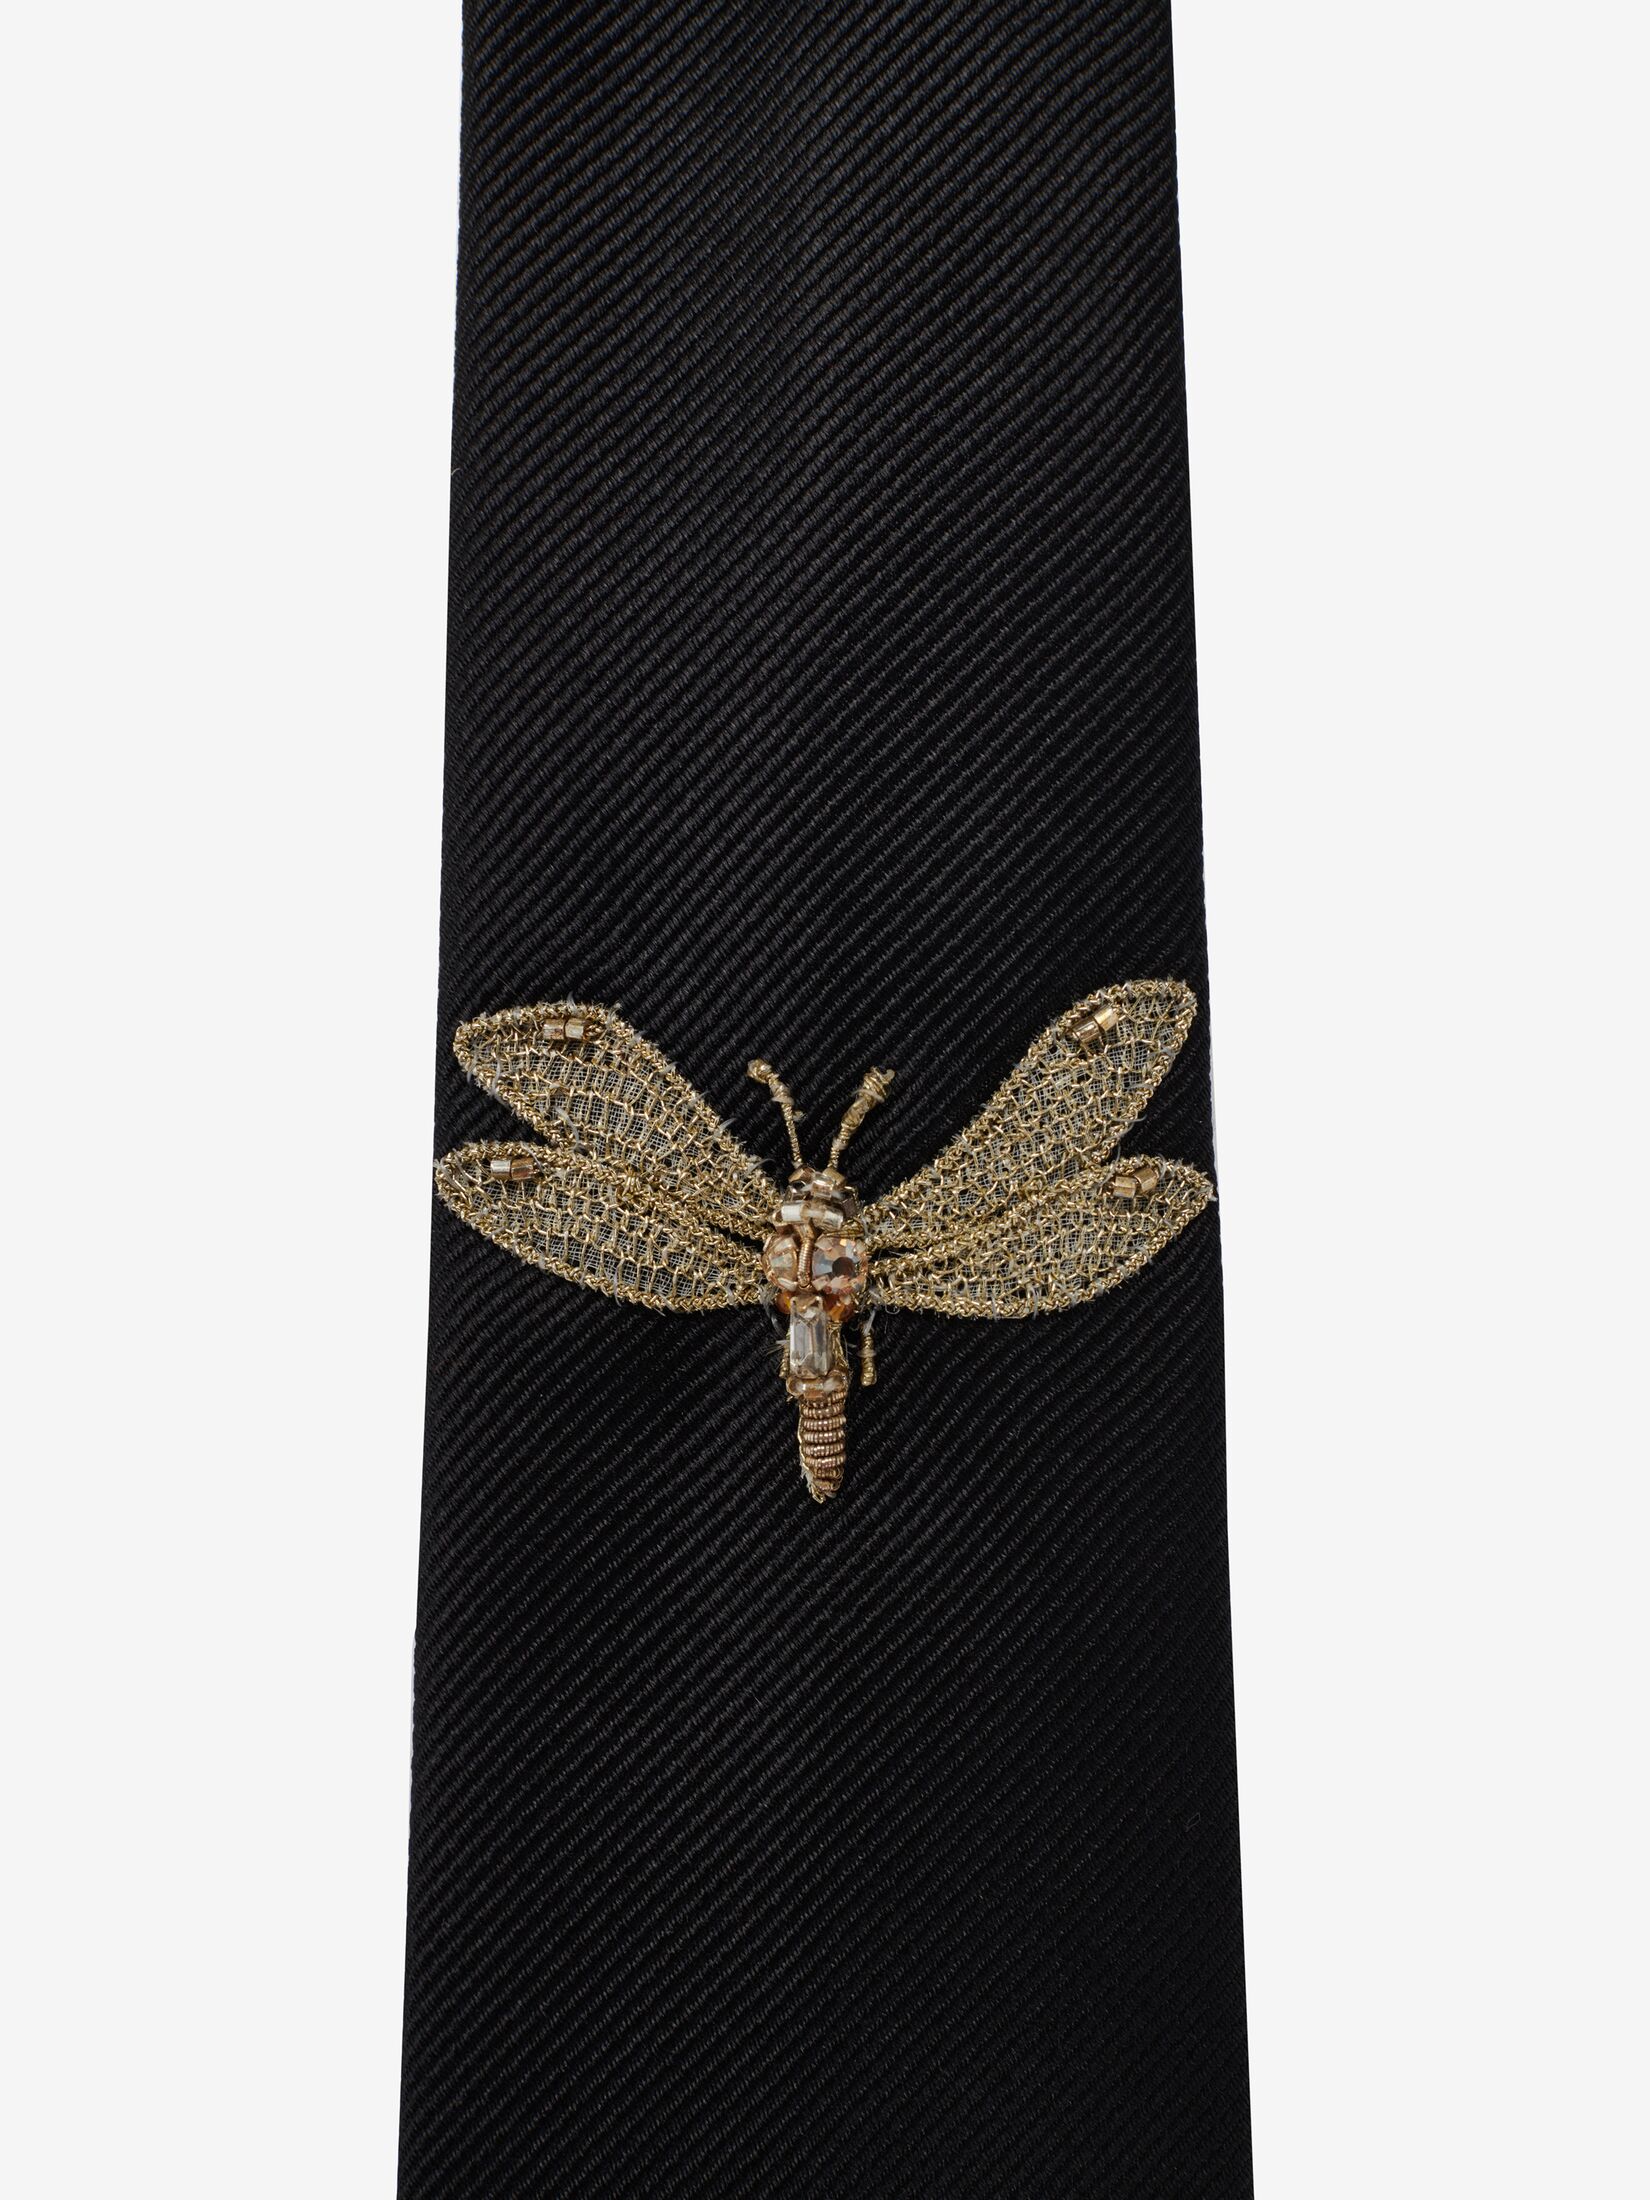 Cravatta con applicazione Dragonfly